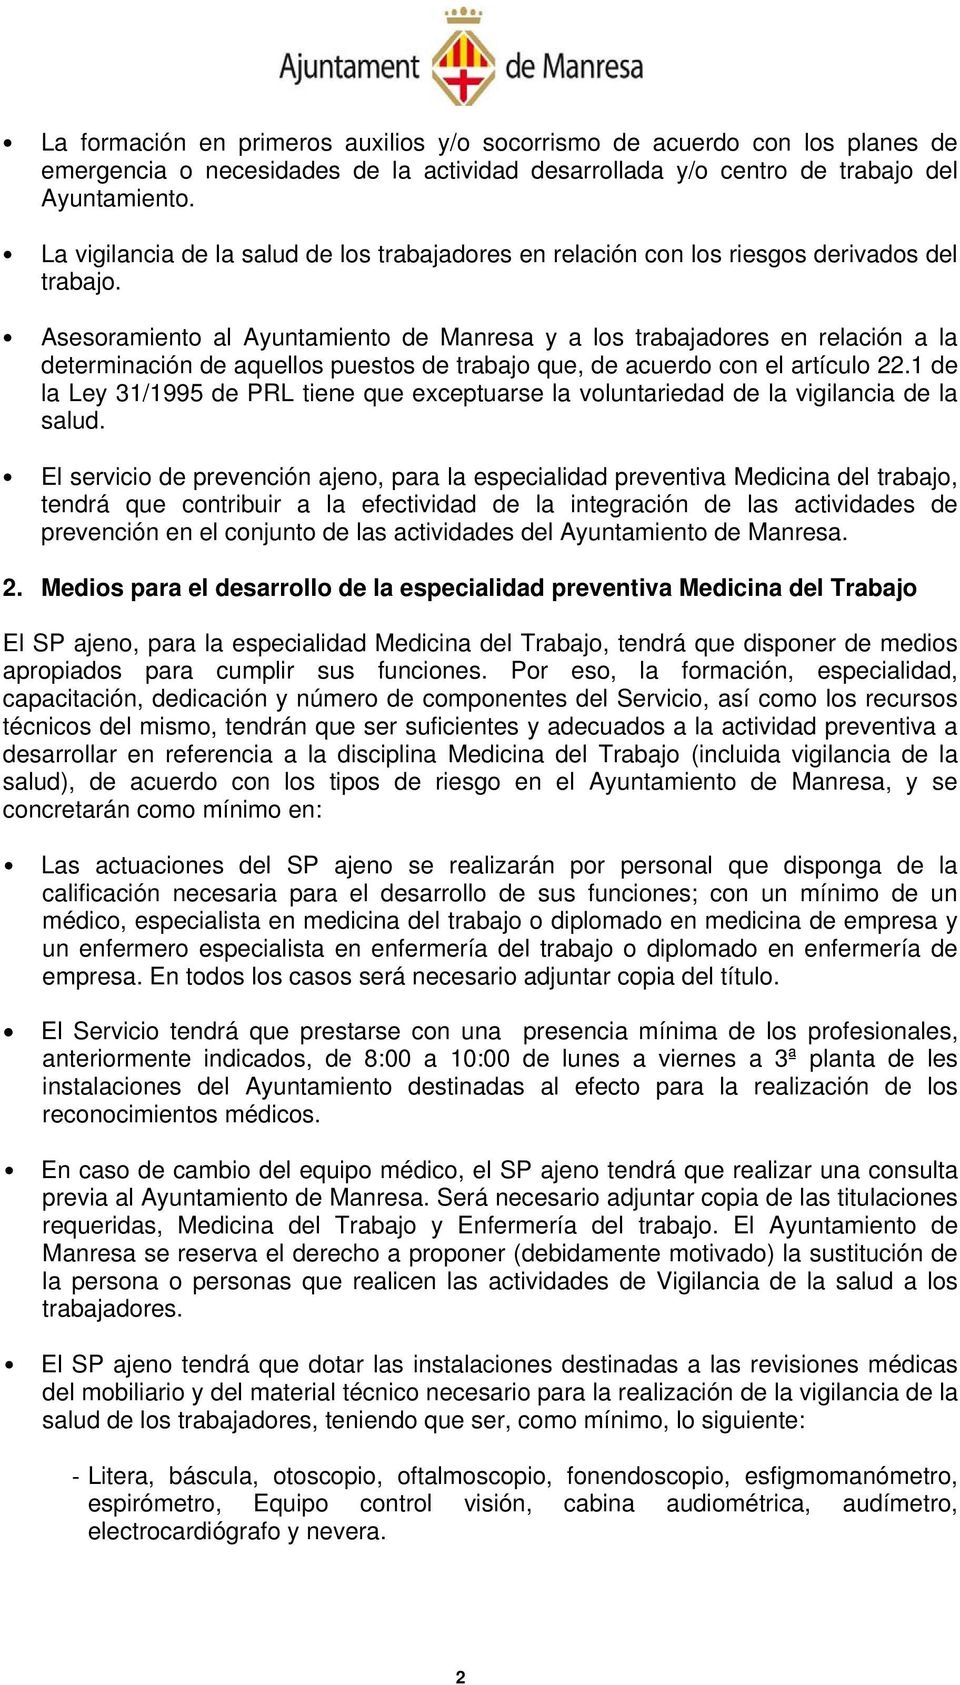 Asesoramiento al Ayuntamiento de Manresa y a los trabajadores en relación a la determinación de aquellos puestos de trabajo que, de acuerdo con el artículo 22.